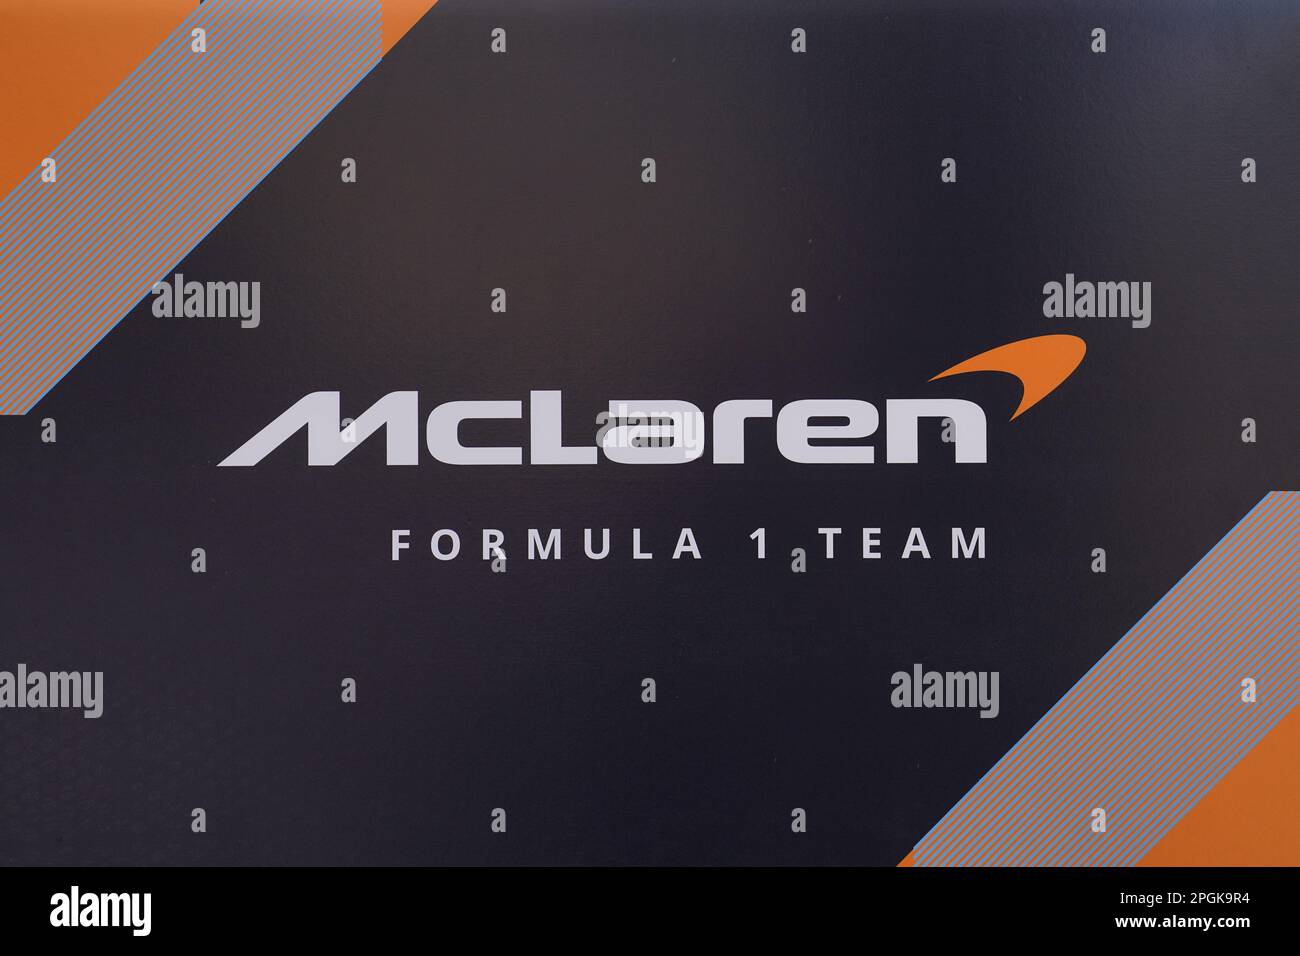 Dateifoto vom 02.-03-2023 von McLaren F1 Team Signage. James Key hat McLaren nach einer umfassenden Überarbeitung der Managementstruktur des britischen Teams verlassen. Ausgabedatum: Donnerstag, 23. März 2023. Stockfoto